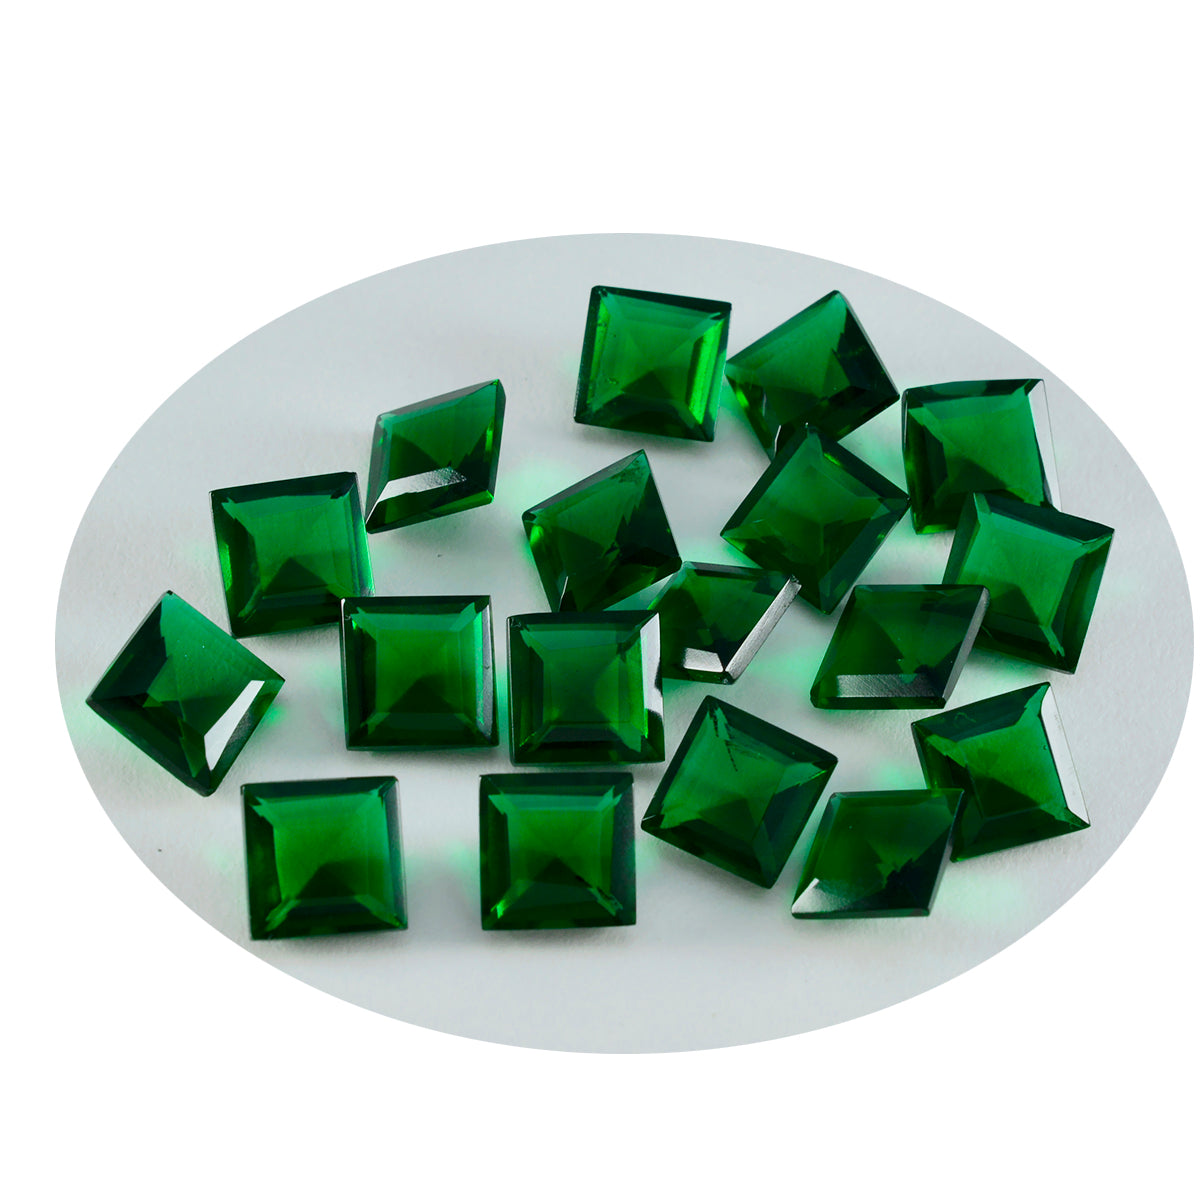 Riyogems 1 Stück grüner Smaragd, CZ, facettiert, 7 x 7 mm, quadratische Form, Edelstein von ausgezeichneter Qualität